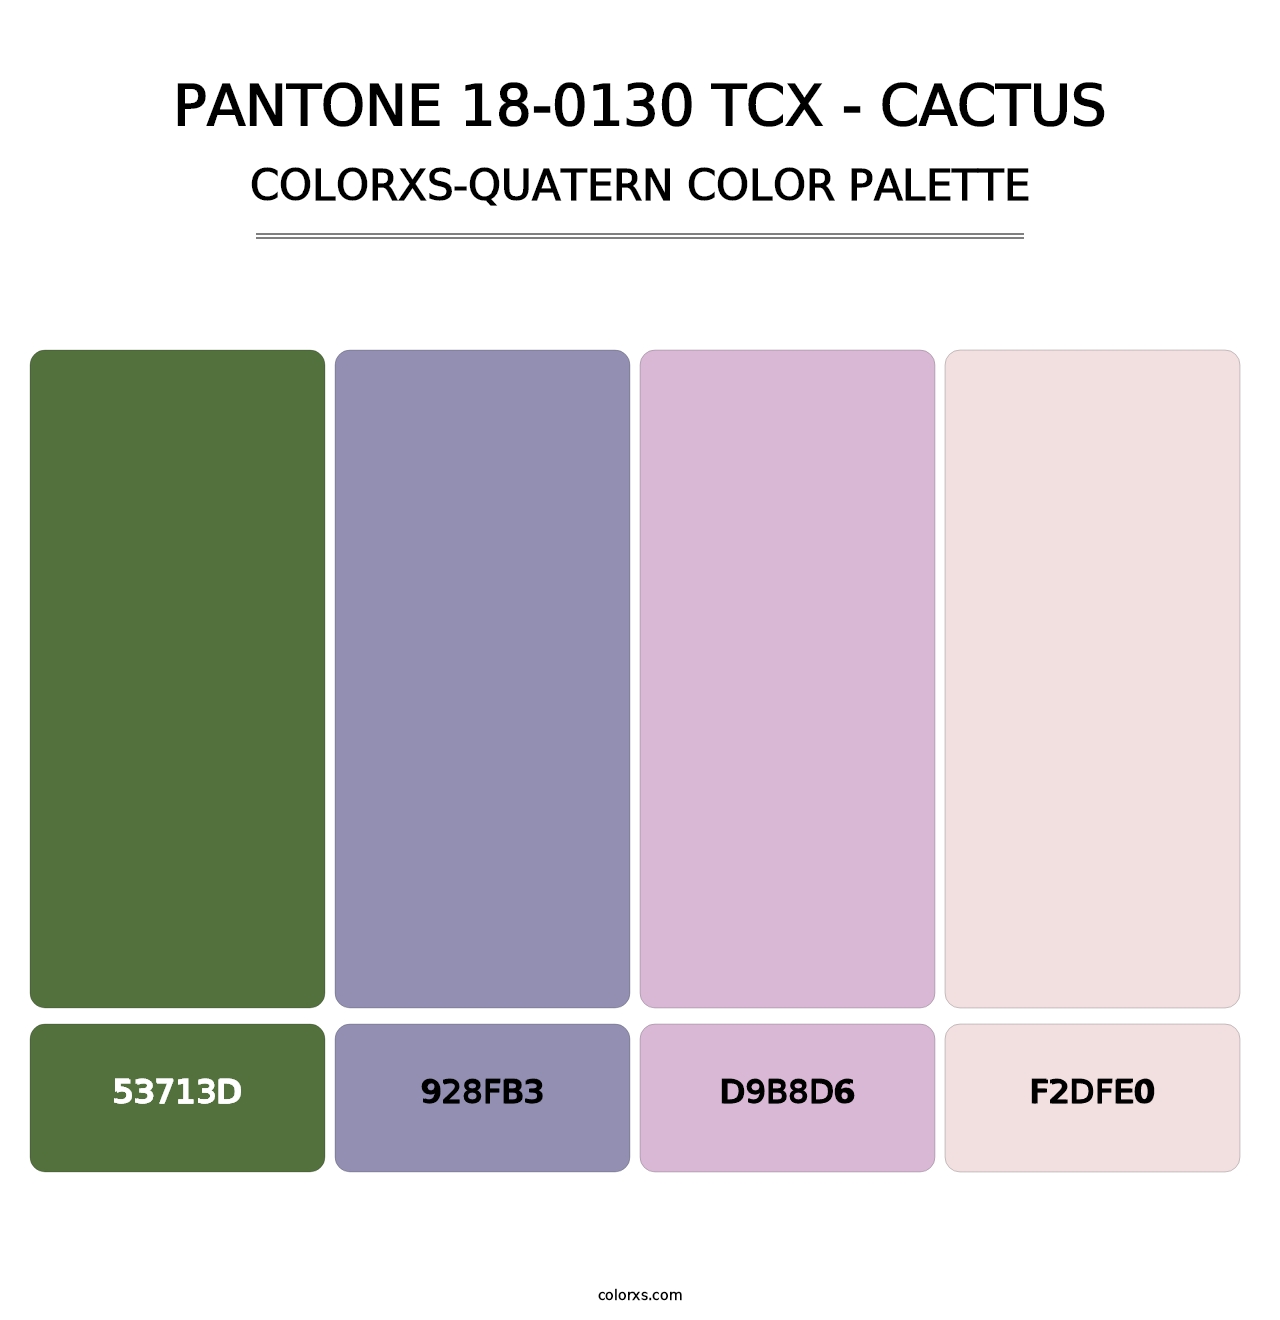 PANTONE 18-0130 TCX - Cactus - Colorxs Quatern Palette